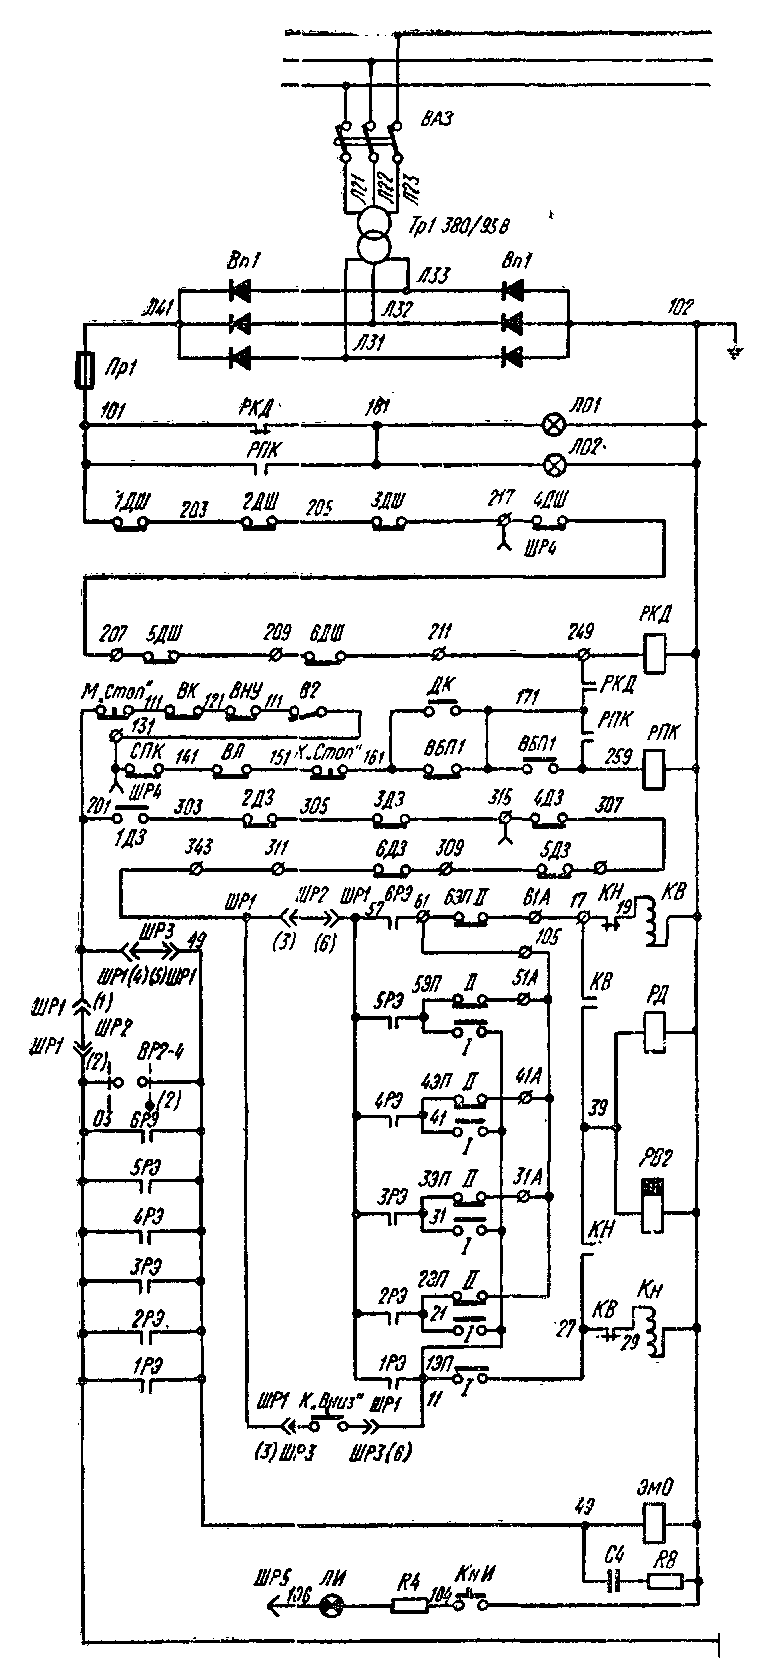  Принципиальная электрическая схема пассажирского лифта